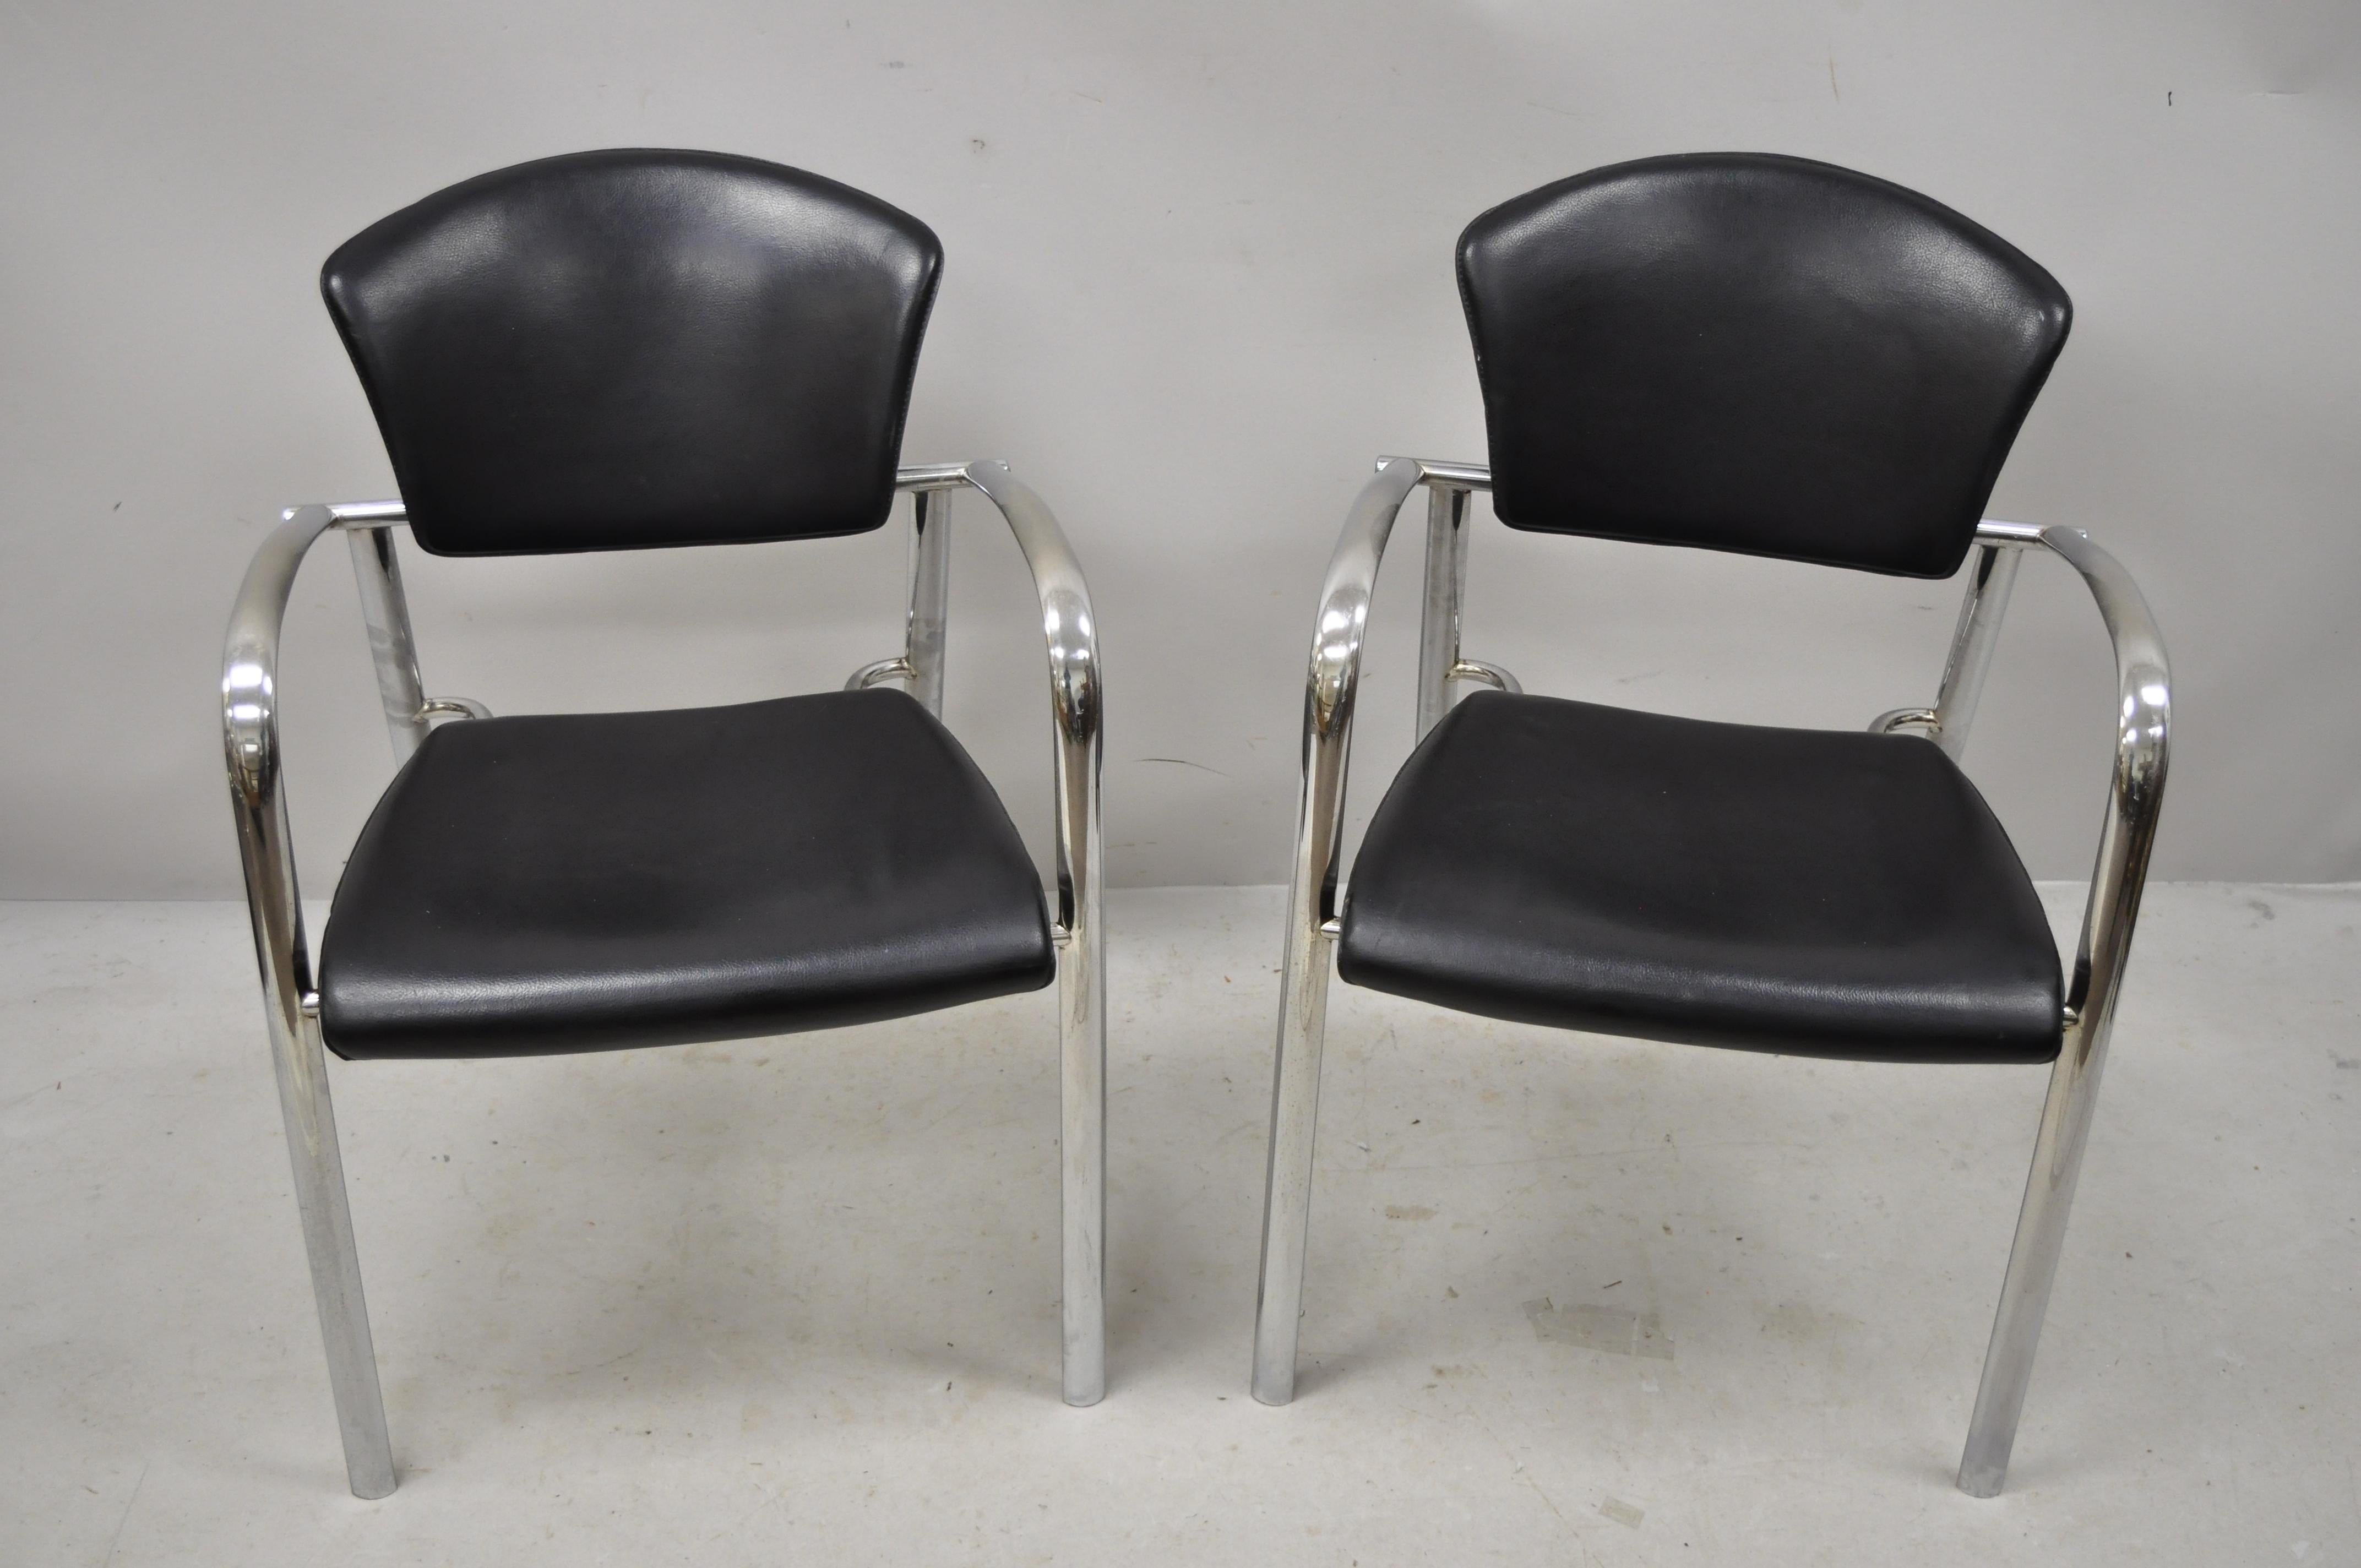 Vintage Italian Mid-Century Modern Chrom schlanke skulpturale Sessel, ein Paar. Artikel mit schwarz genähtem, lederumwickeltem Rahmen, Chromrahmen, sehr schöner Vintage-Artikel, hochwertige italienische Handwerkskunst, schlanke skulpturale Form,